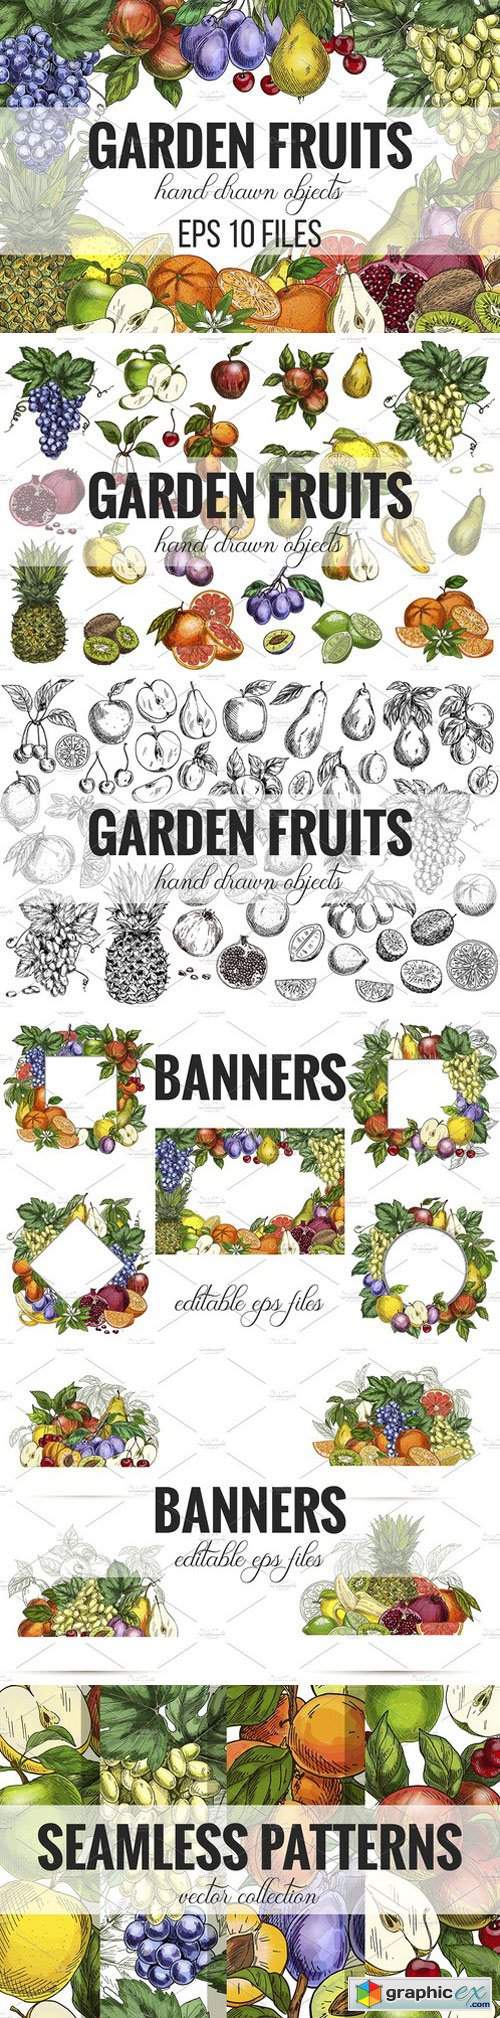 Garden Fruits, vector collection